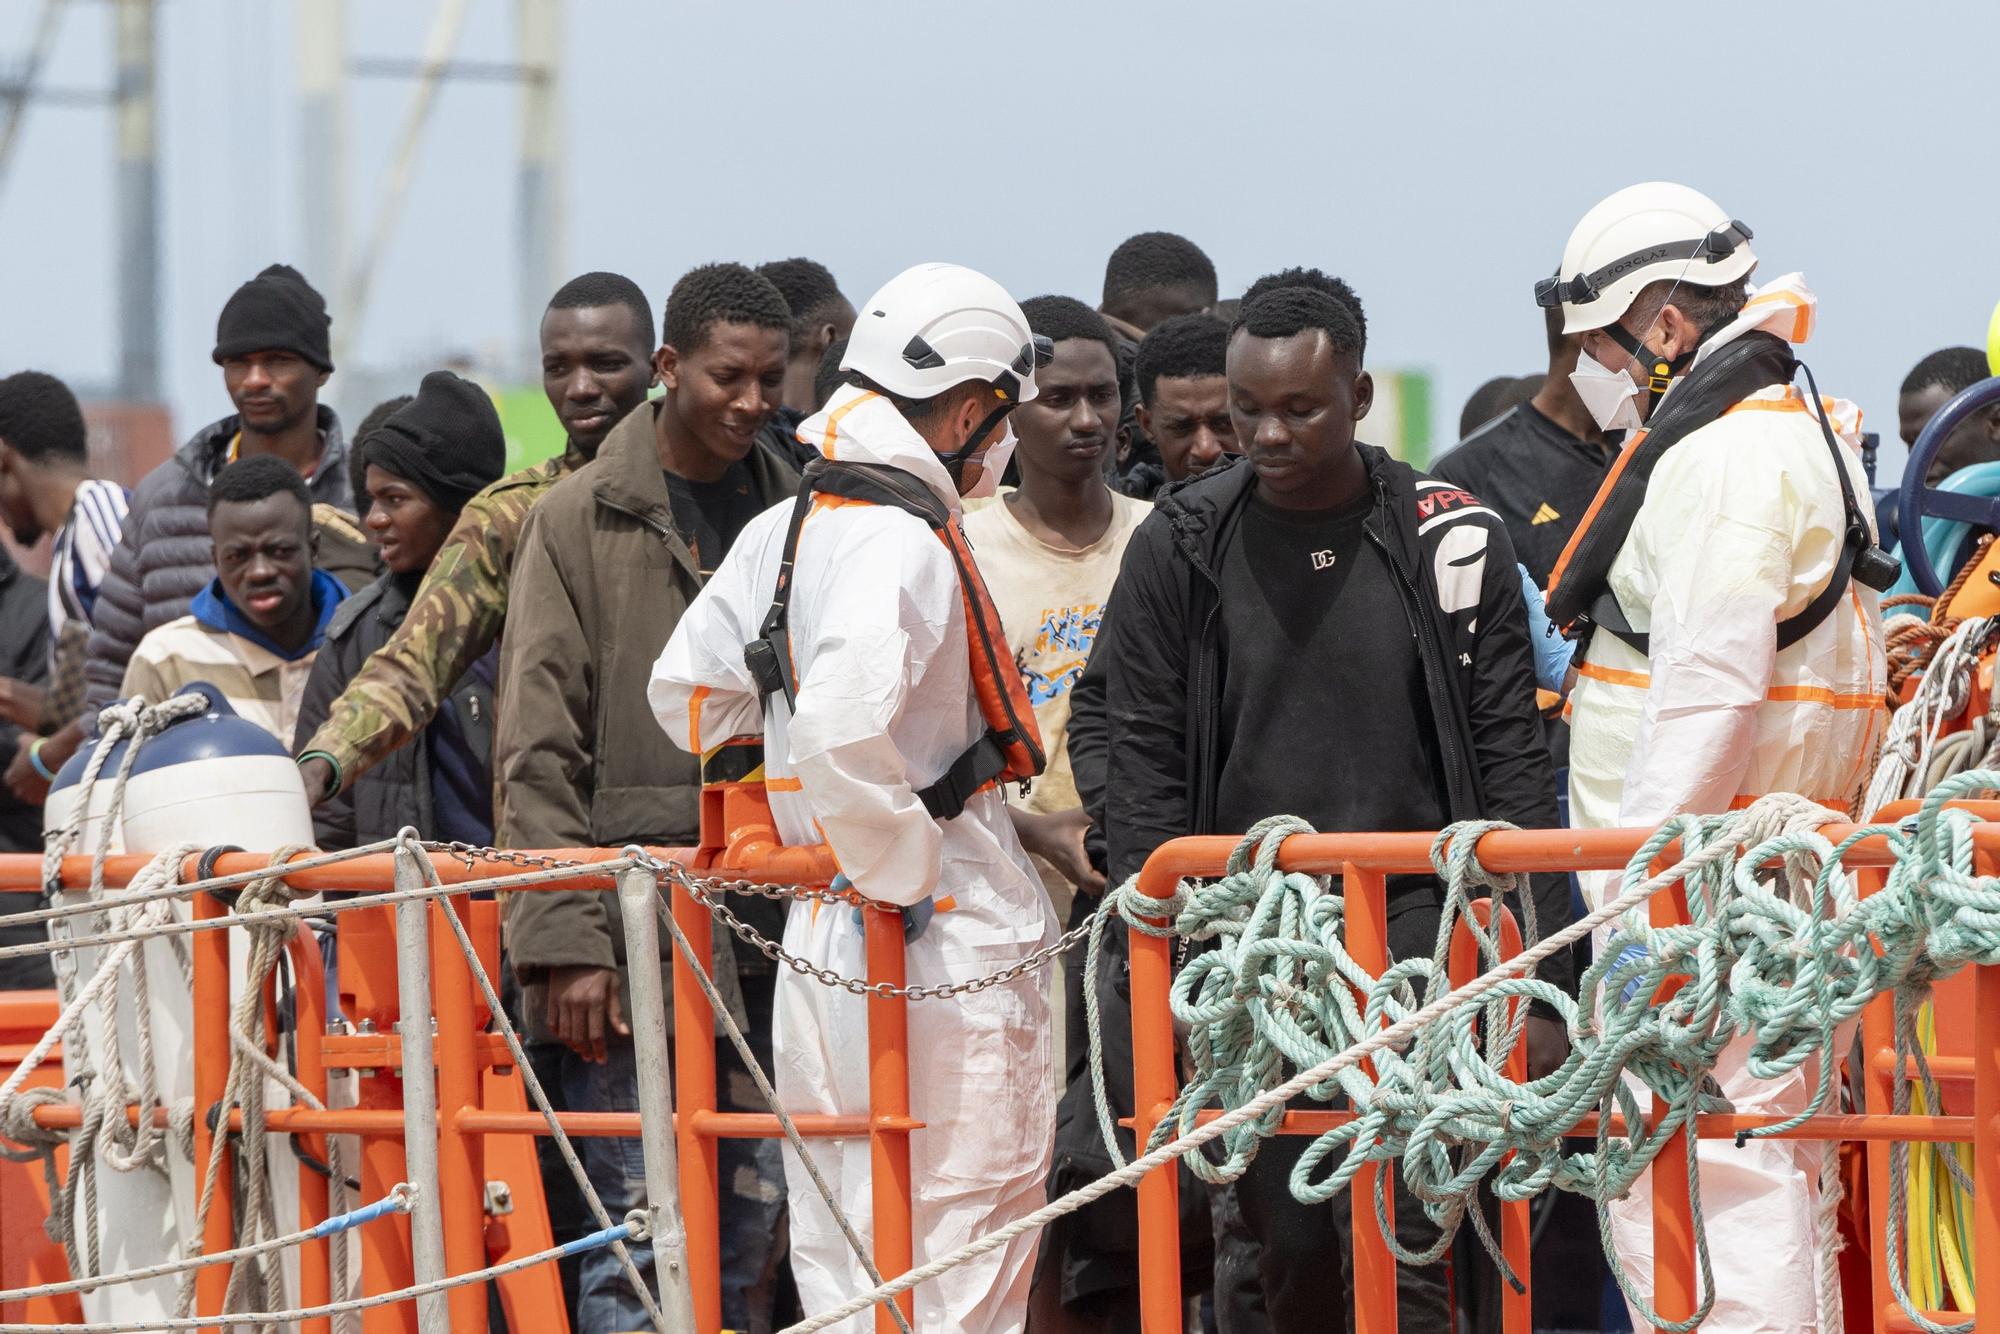 Salvamento Marítimo rescata a 64 migrantes de una neumática cerca de Lanzarote